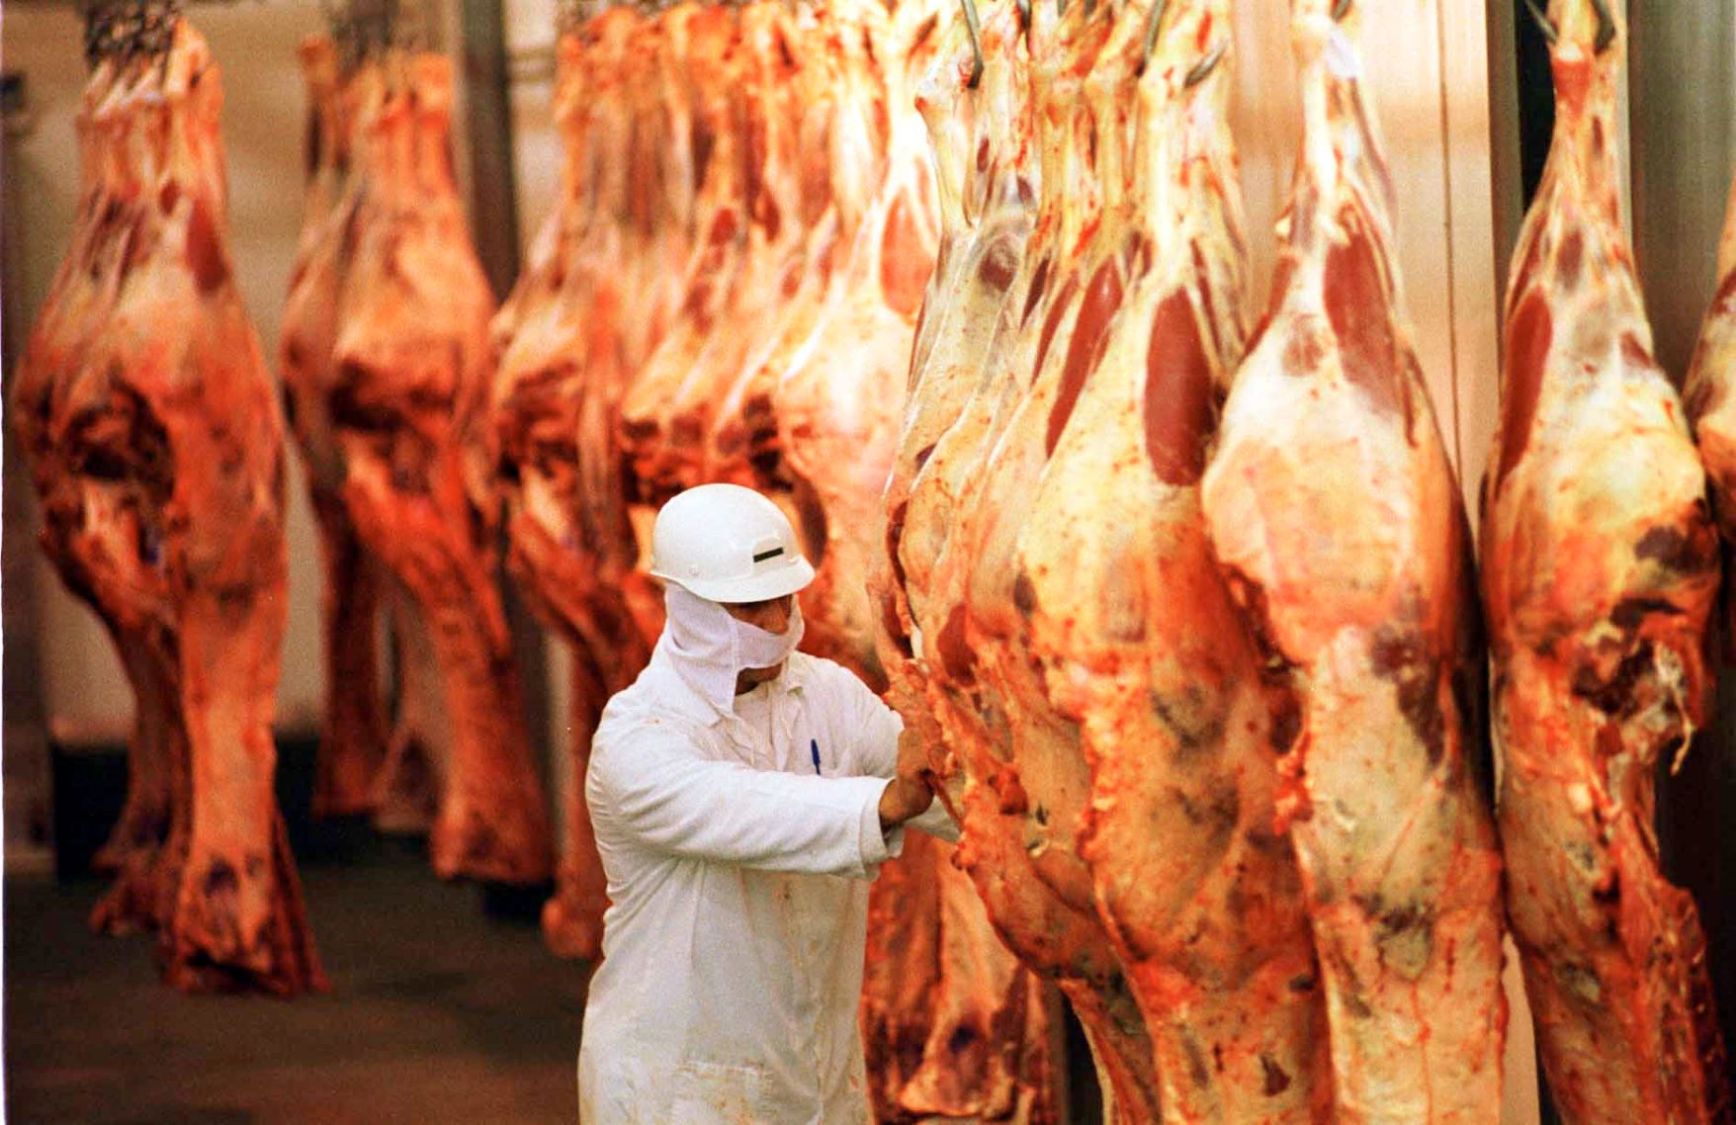 Exportação de carne bovina do Brasil aumenta 80% em abril